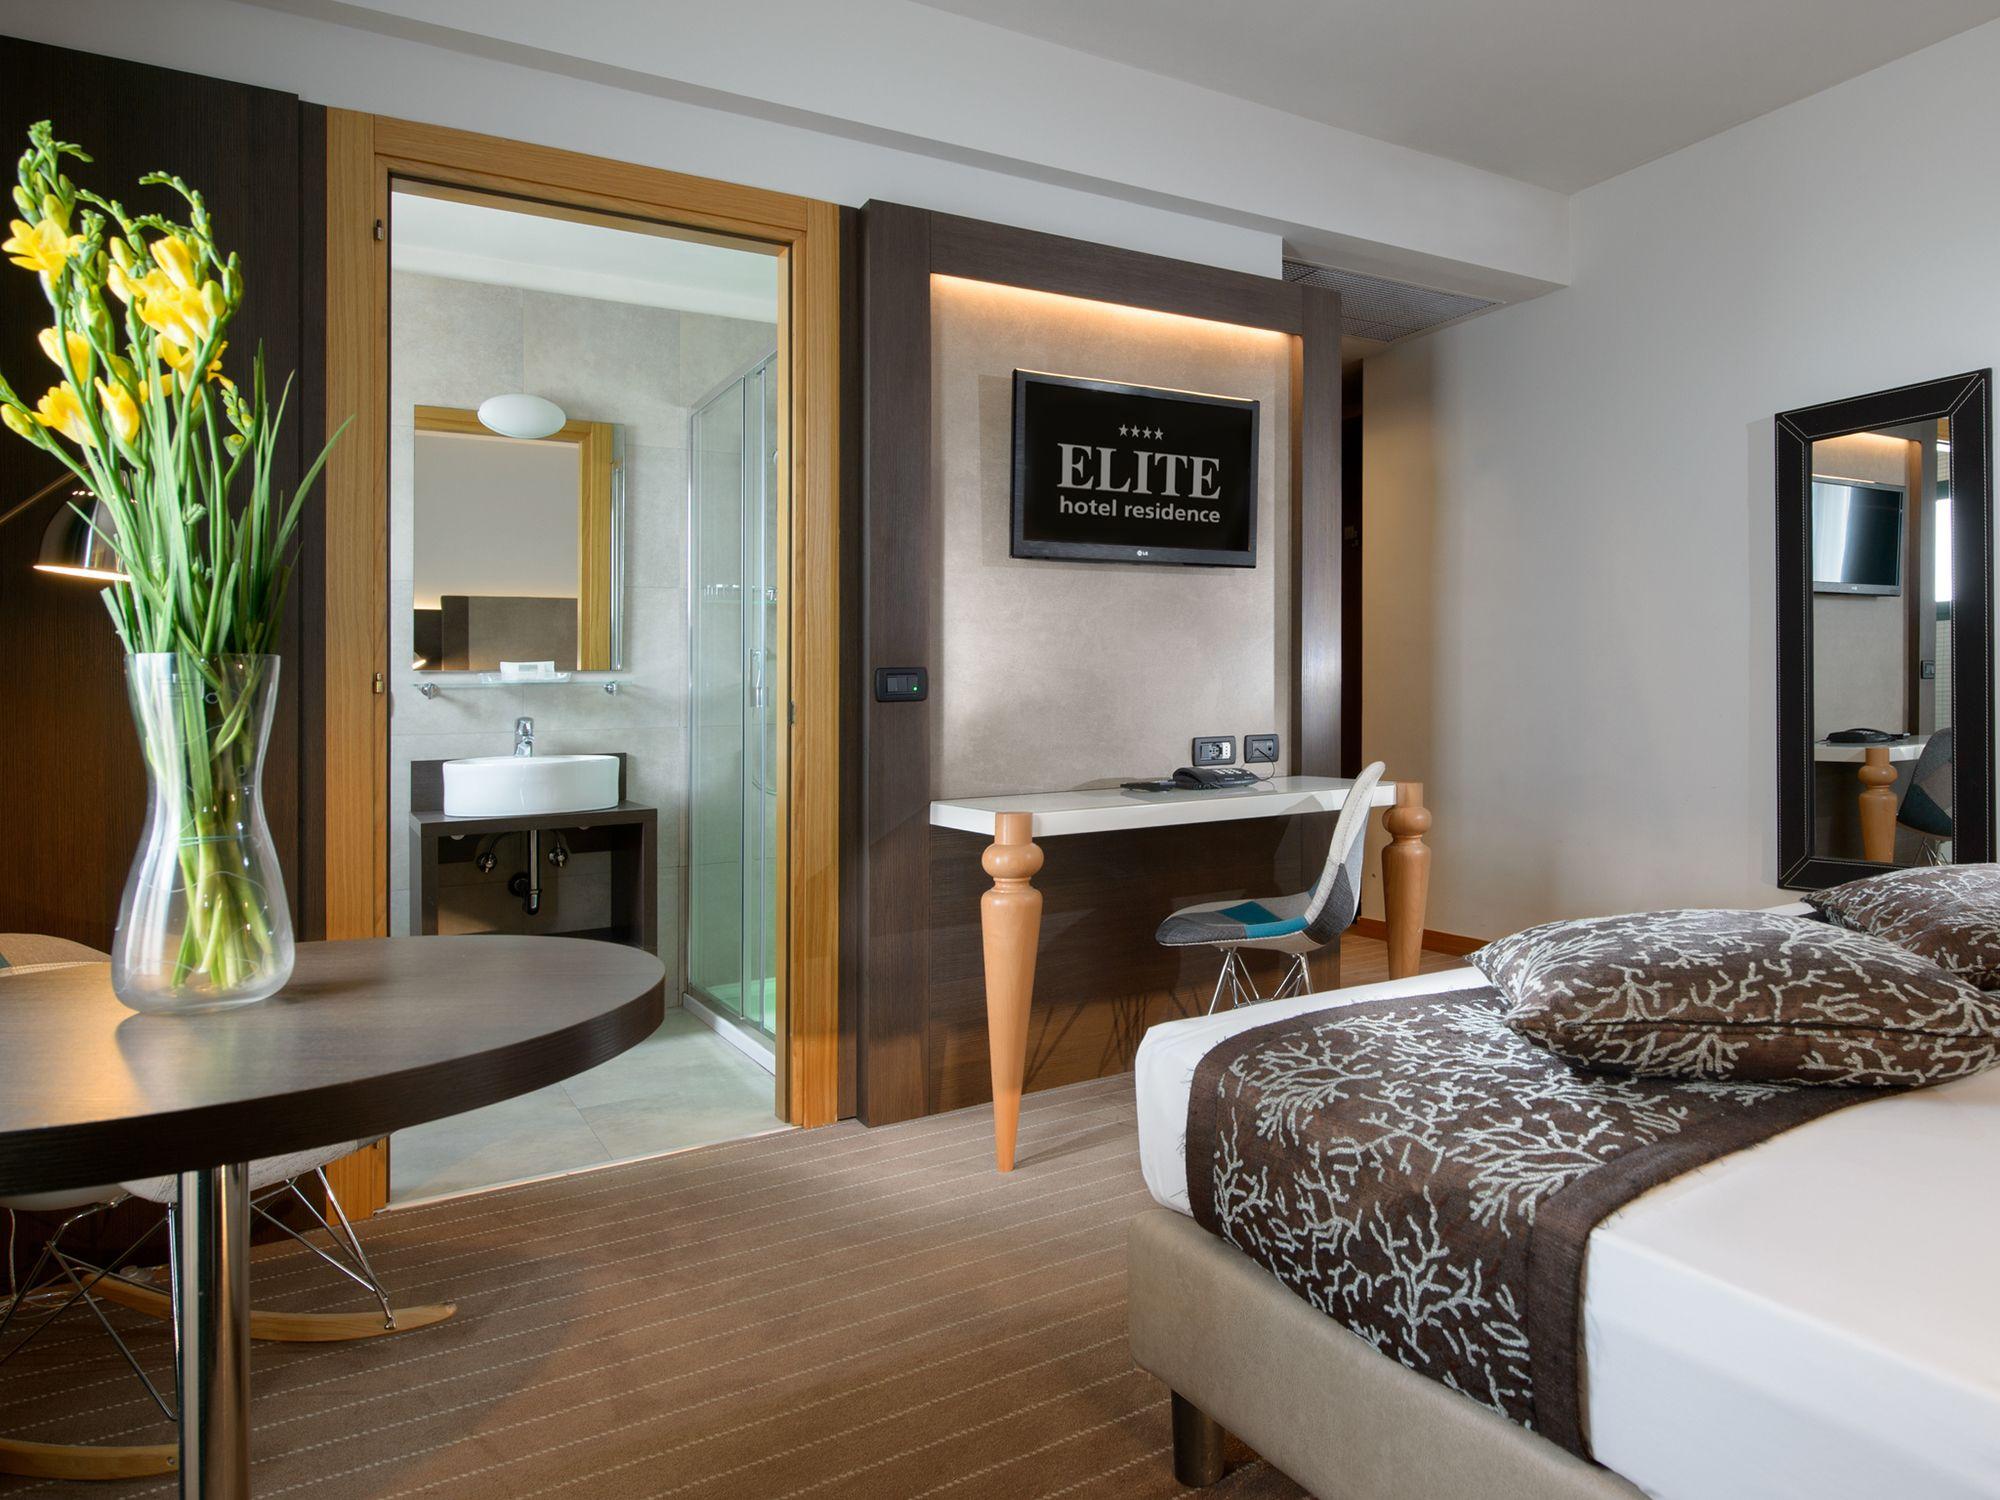 Equipamiento de Habitación Elite Hotel Residence